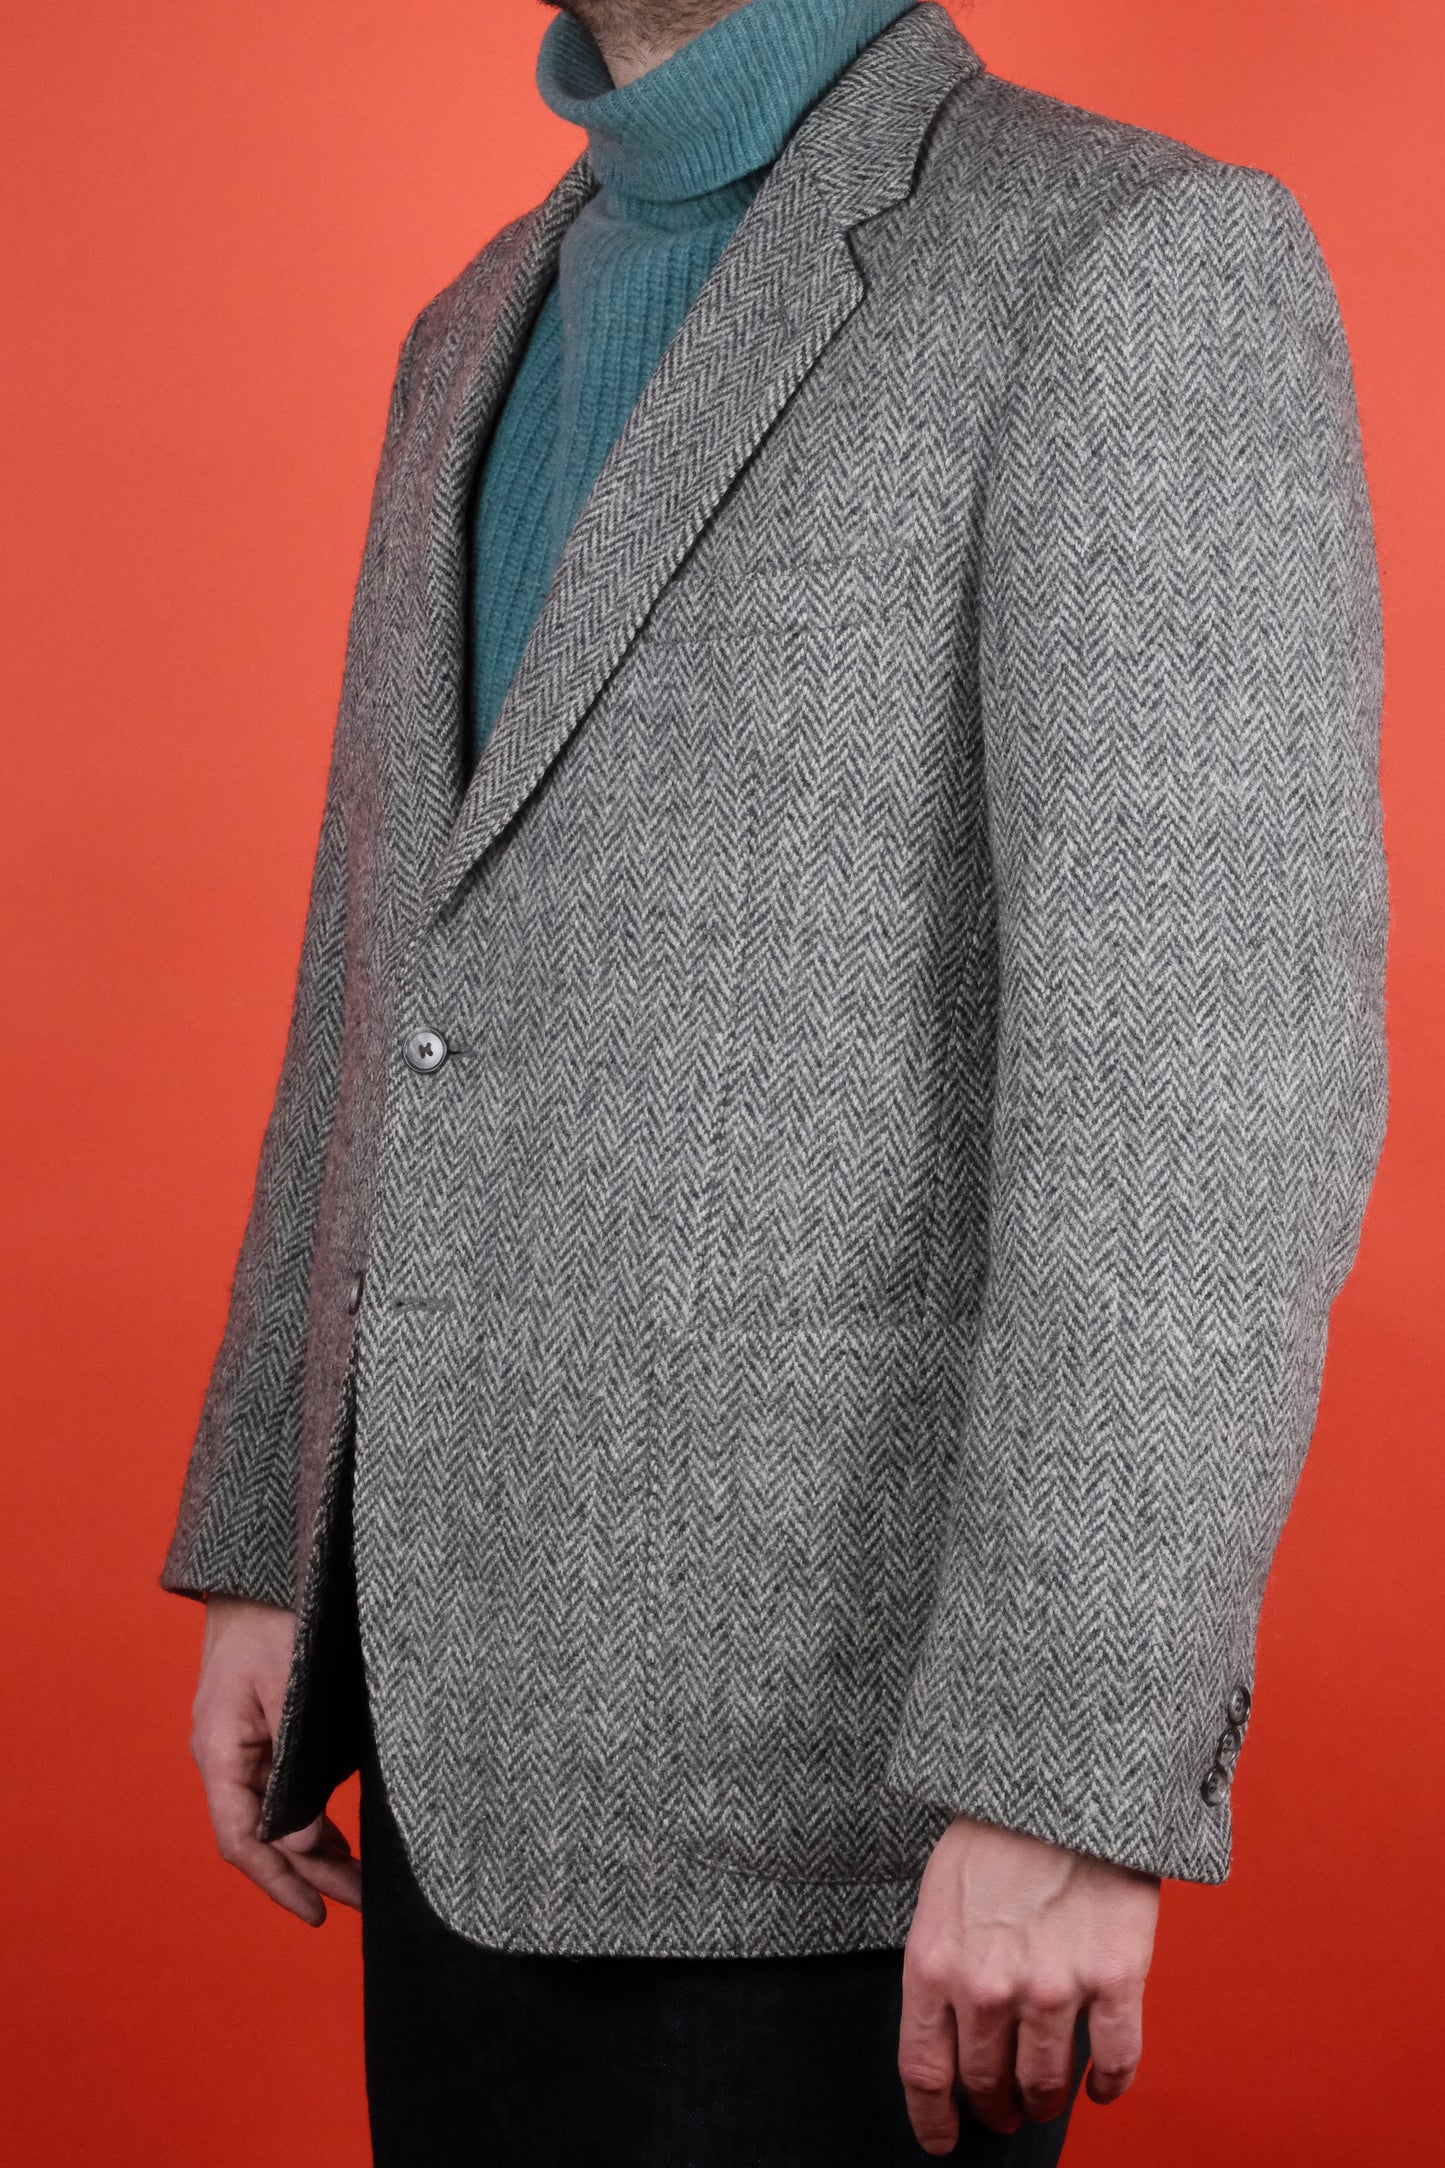 Grey Herringbone Harris Tweed Suit Jacket 'M' - vintage clothing clochard92.com